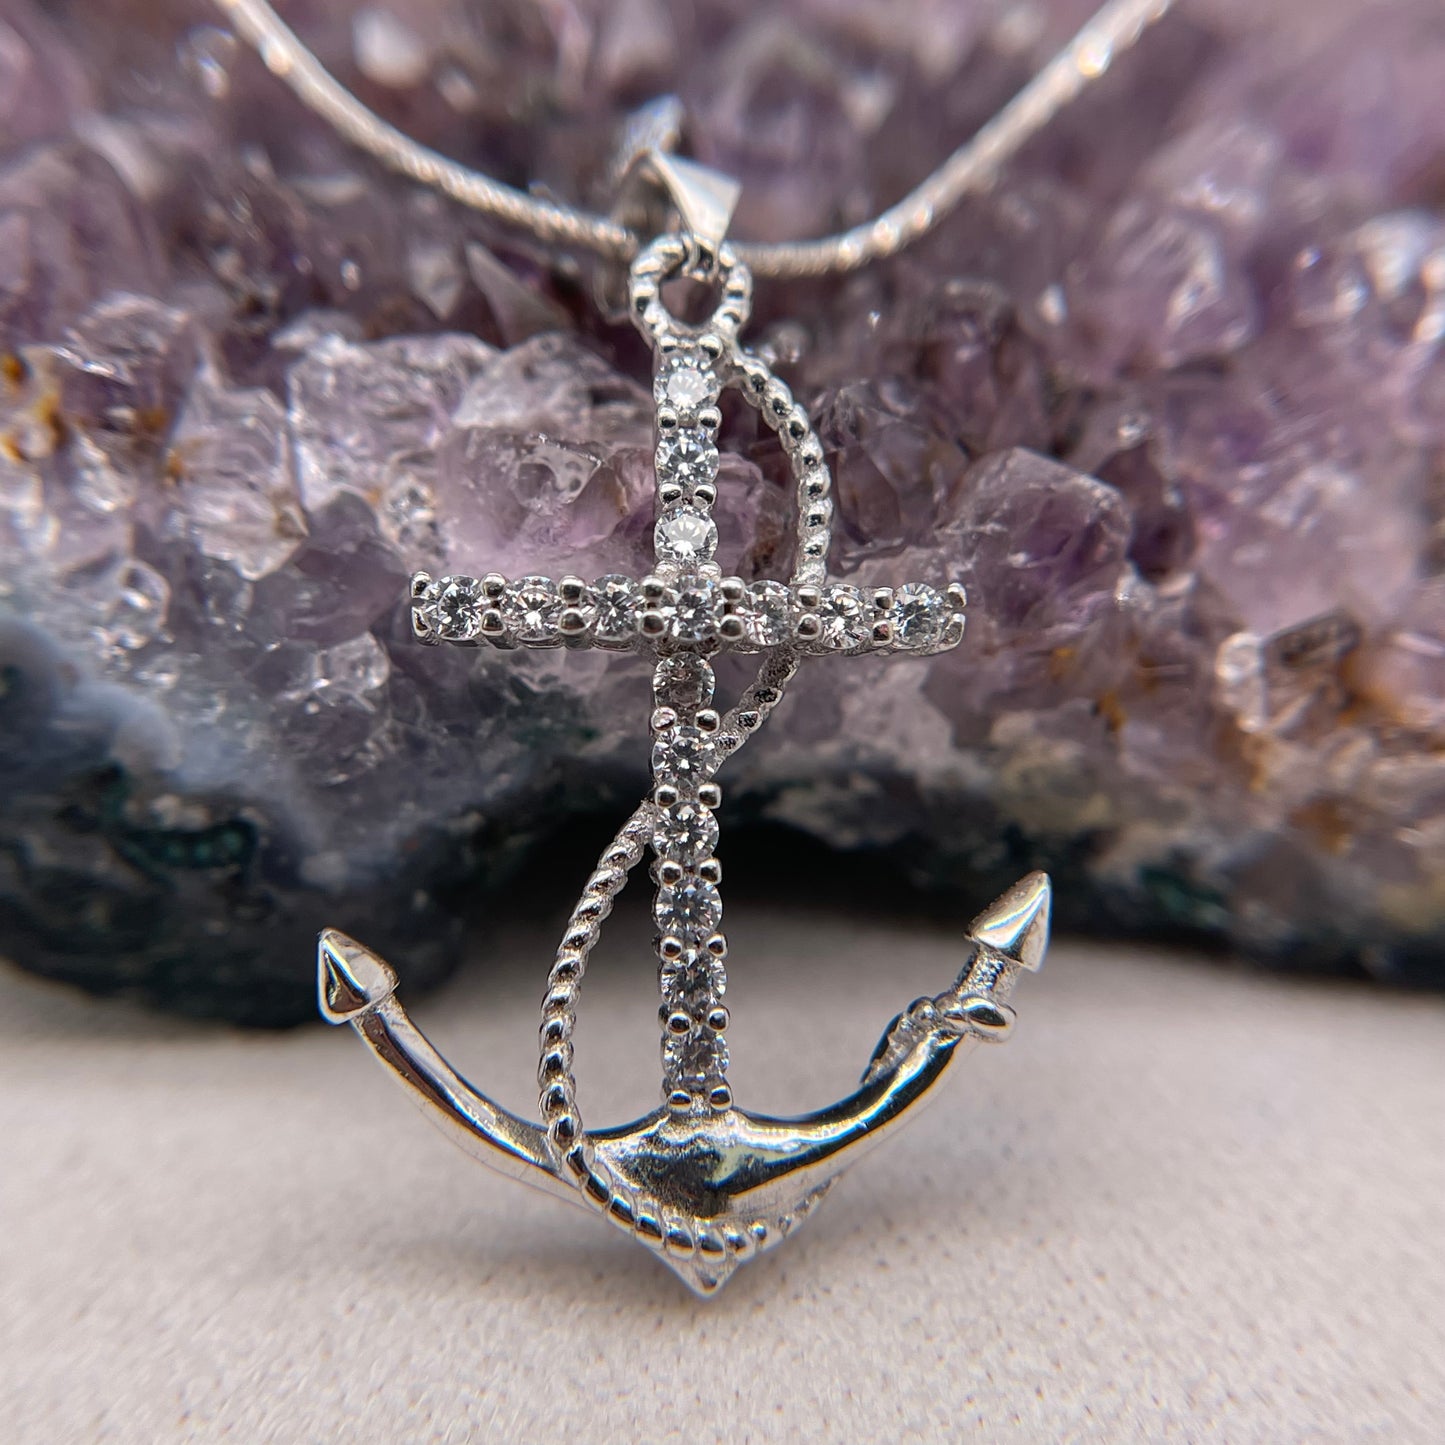 Sea Anchor Silver Pendant 925 Sterling Silver Sea Anchor Necklace Drift Anchor Pendant